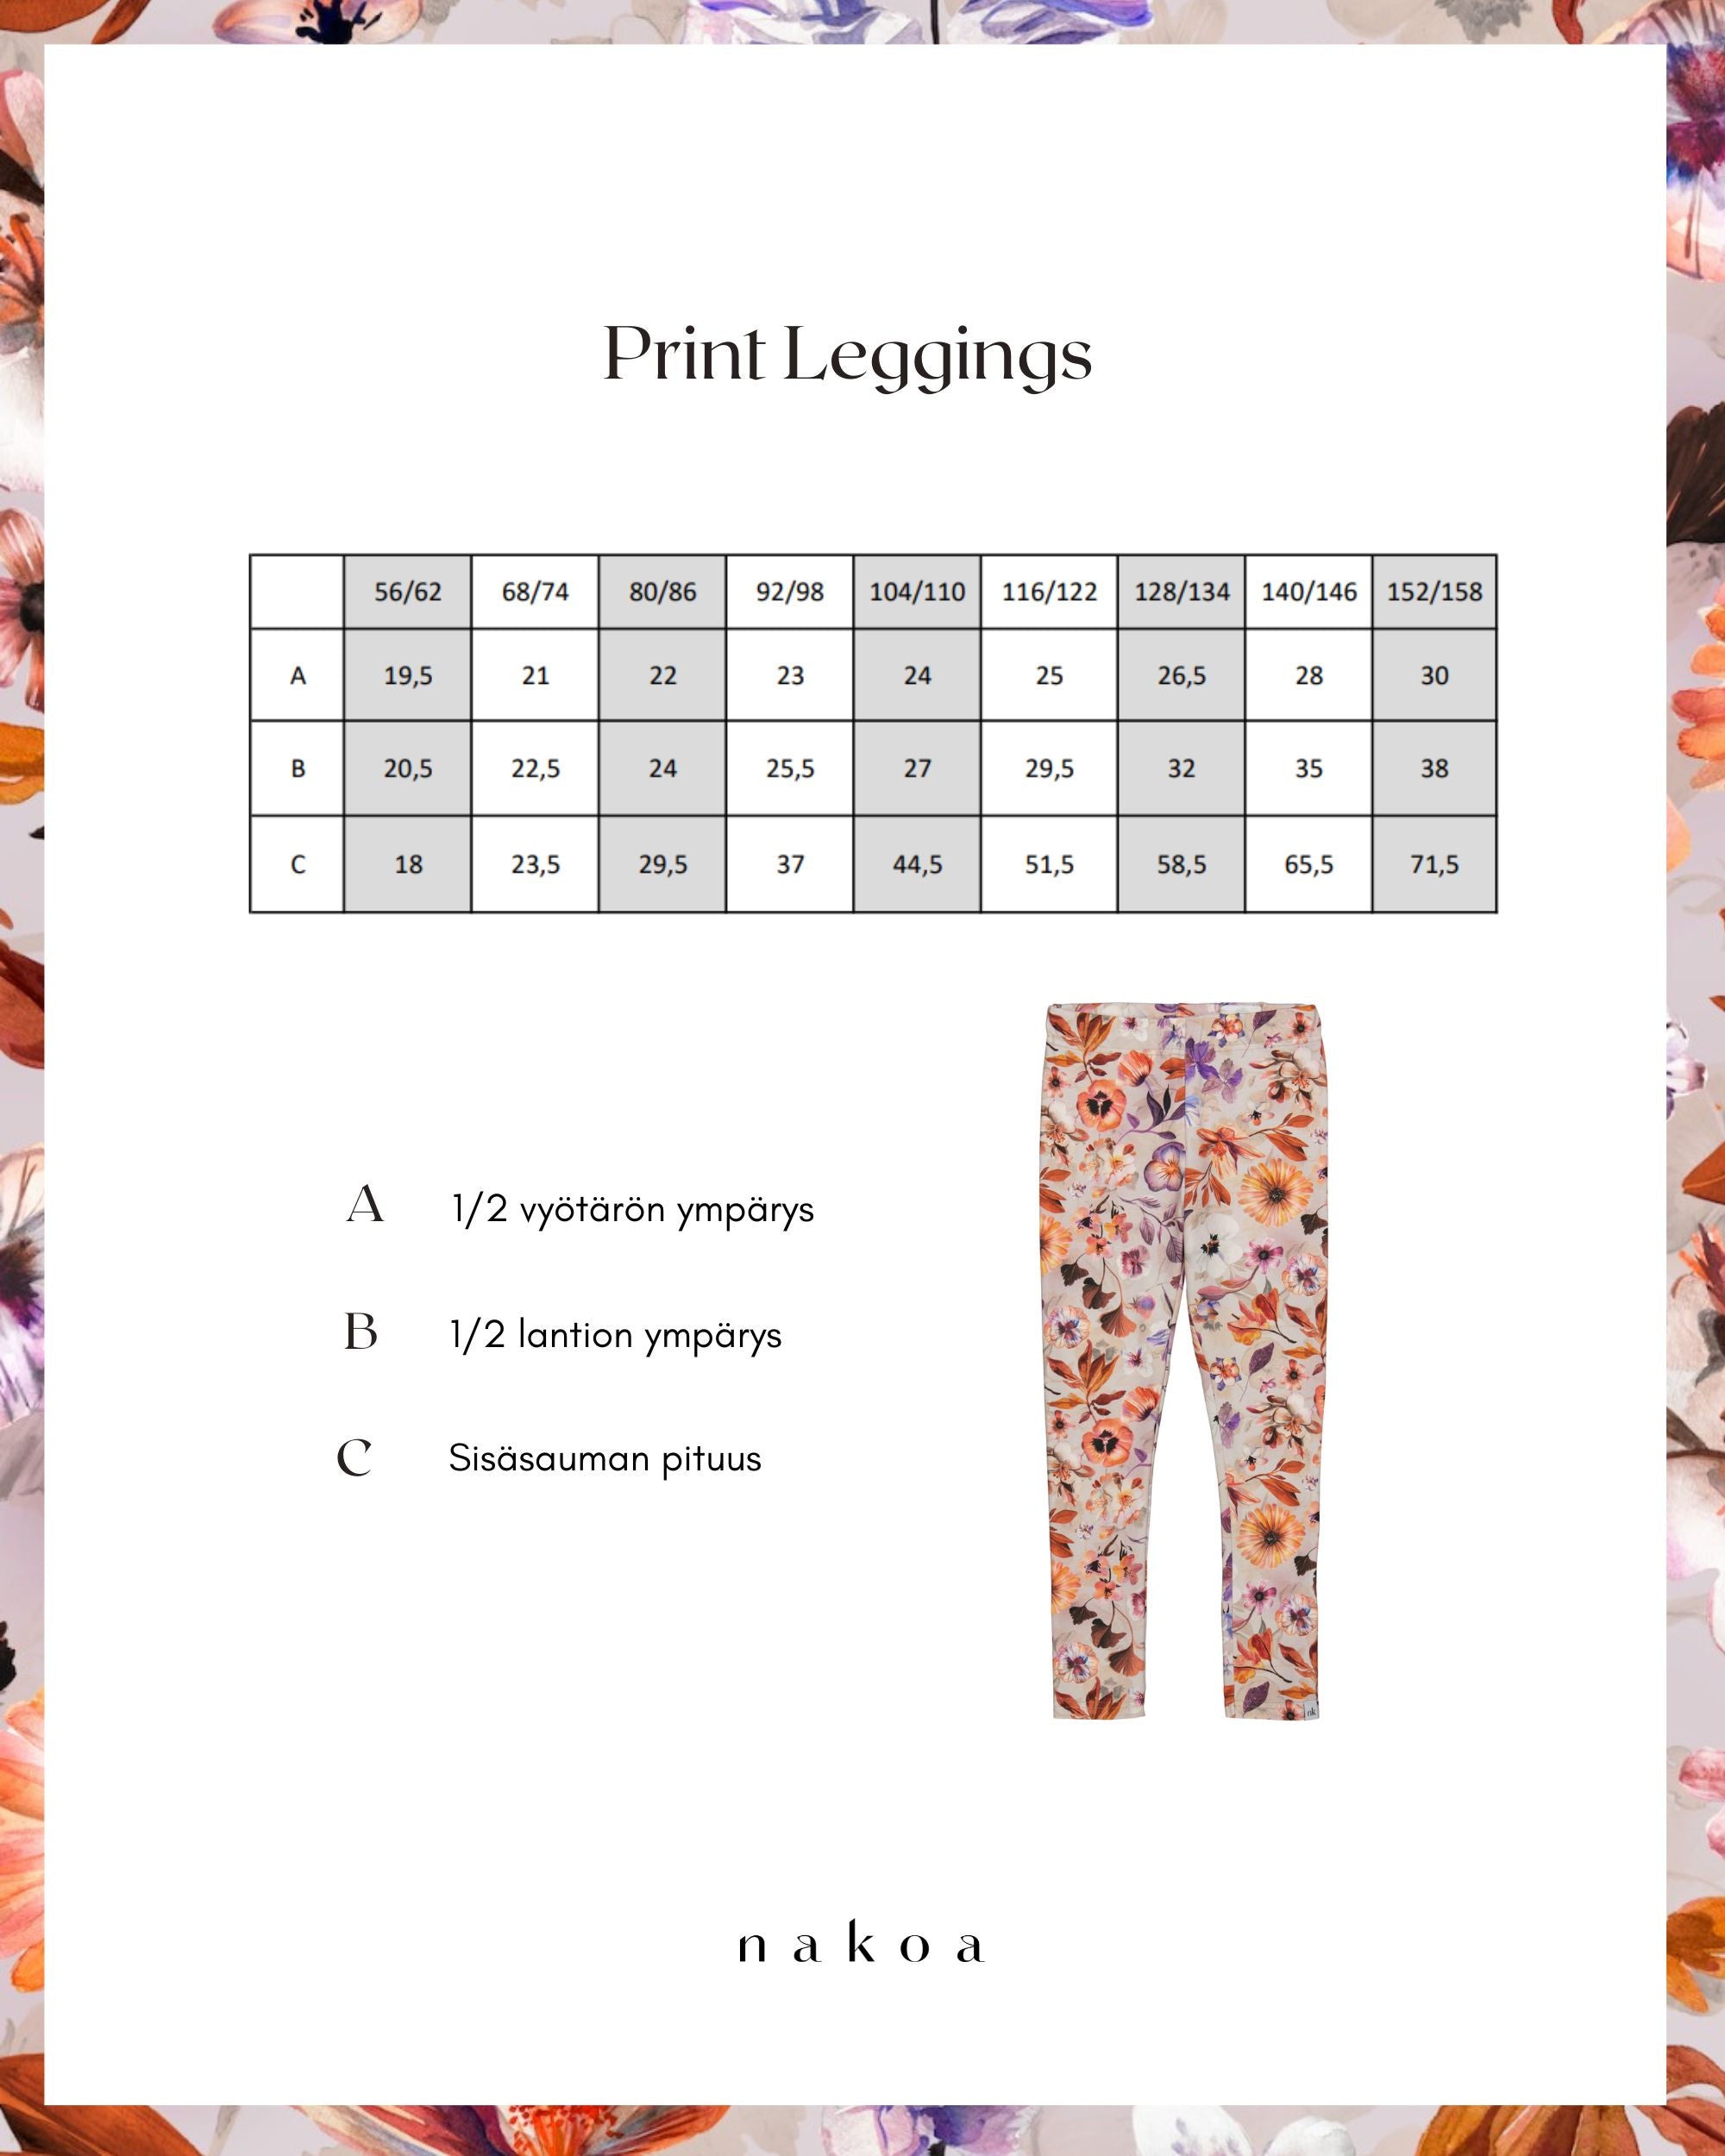 Print Leggings, Daisies